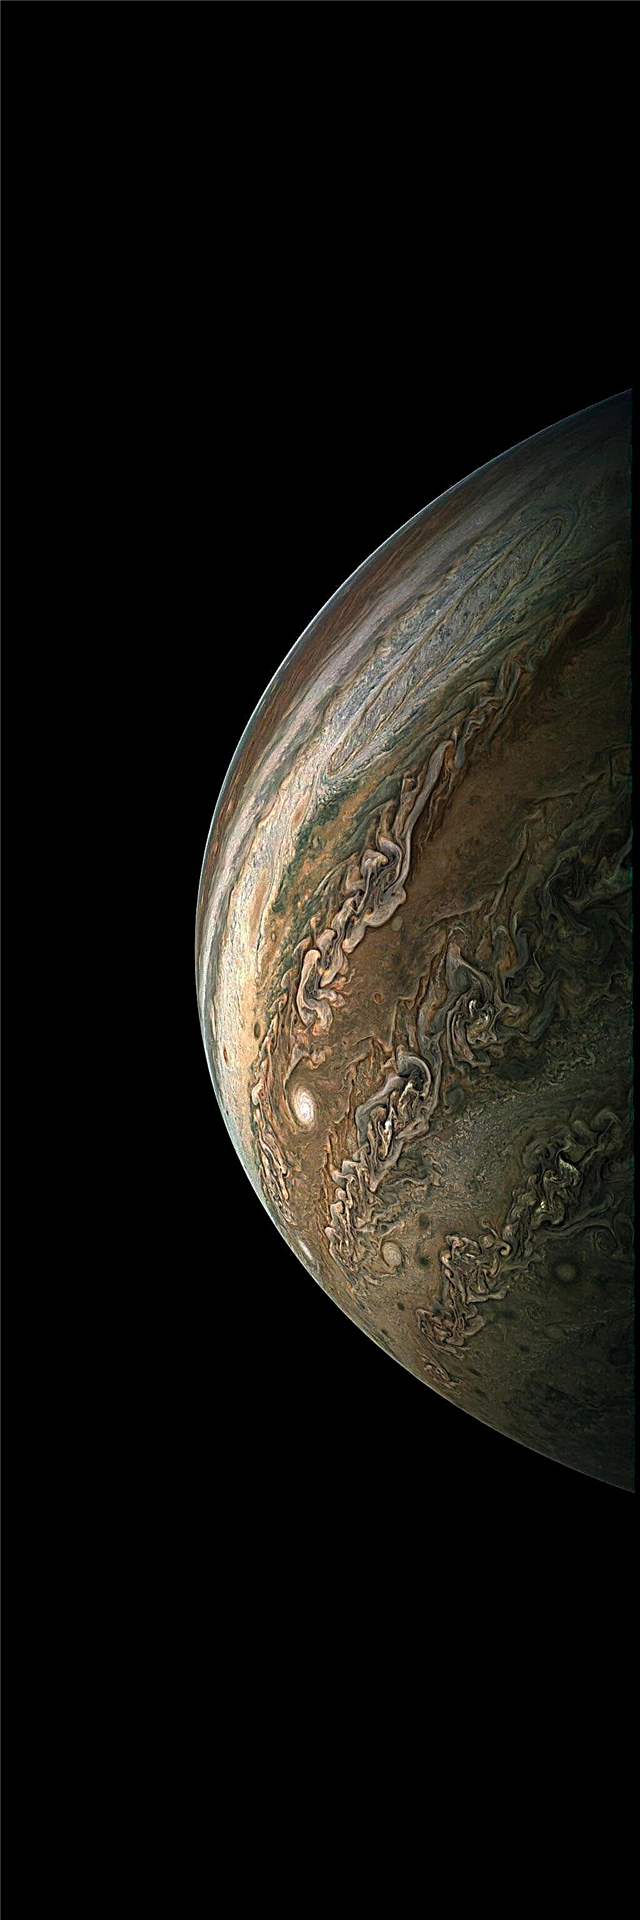 Juno Probe completa 10º sobrevôo científico de Júpiter; Cidadãos produzem imagens incríveis